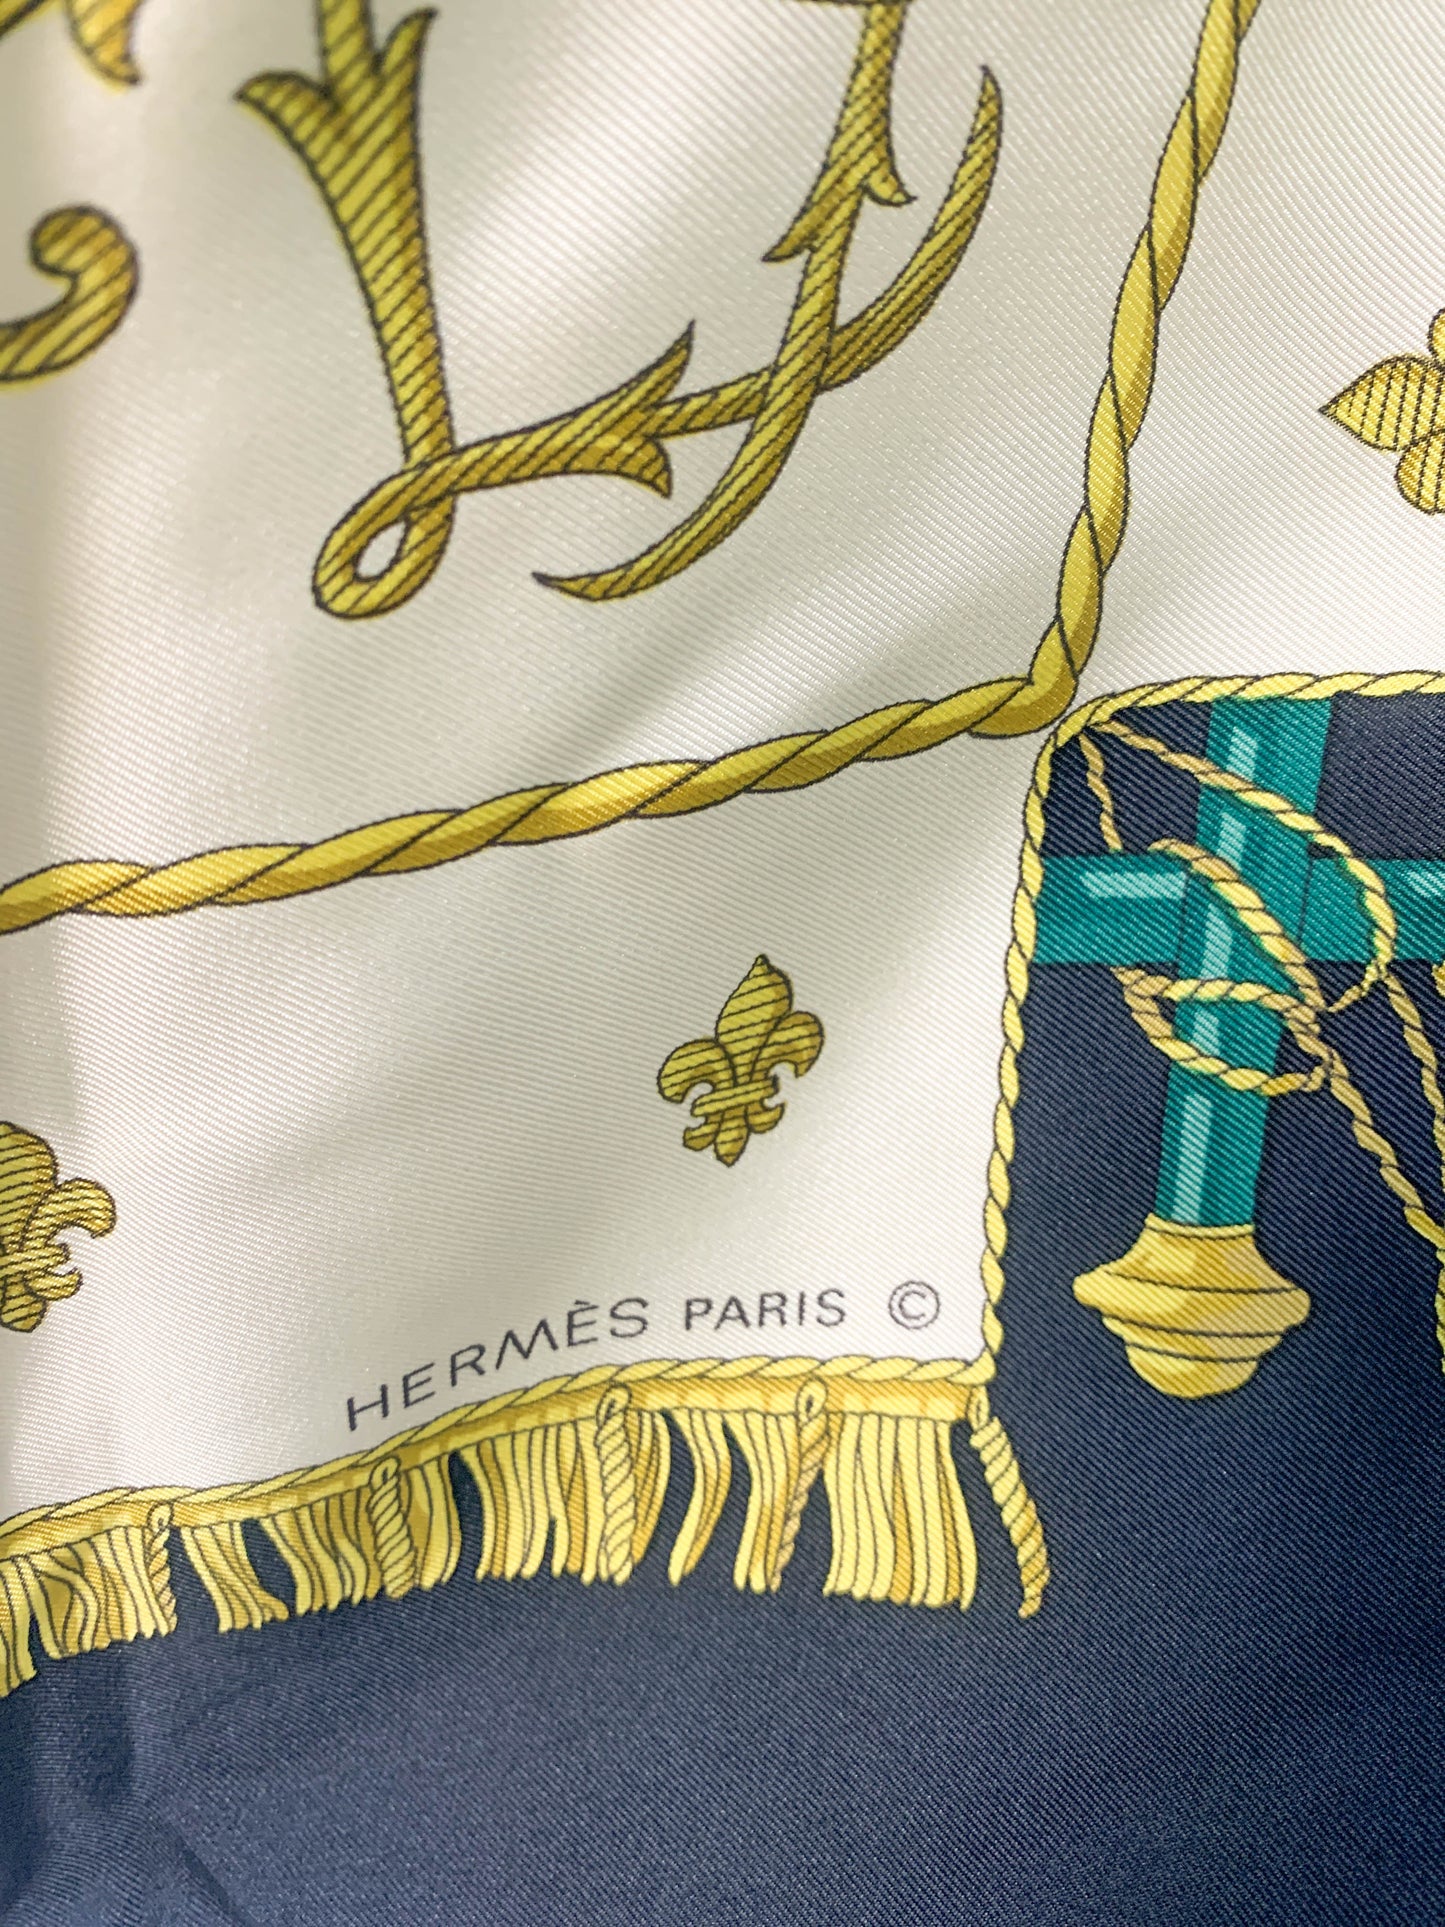 Rare Auth Hermes silk scarf navy   35" x 35" -  220224